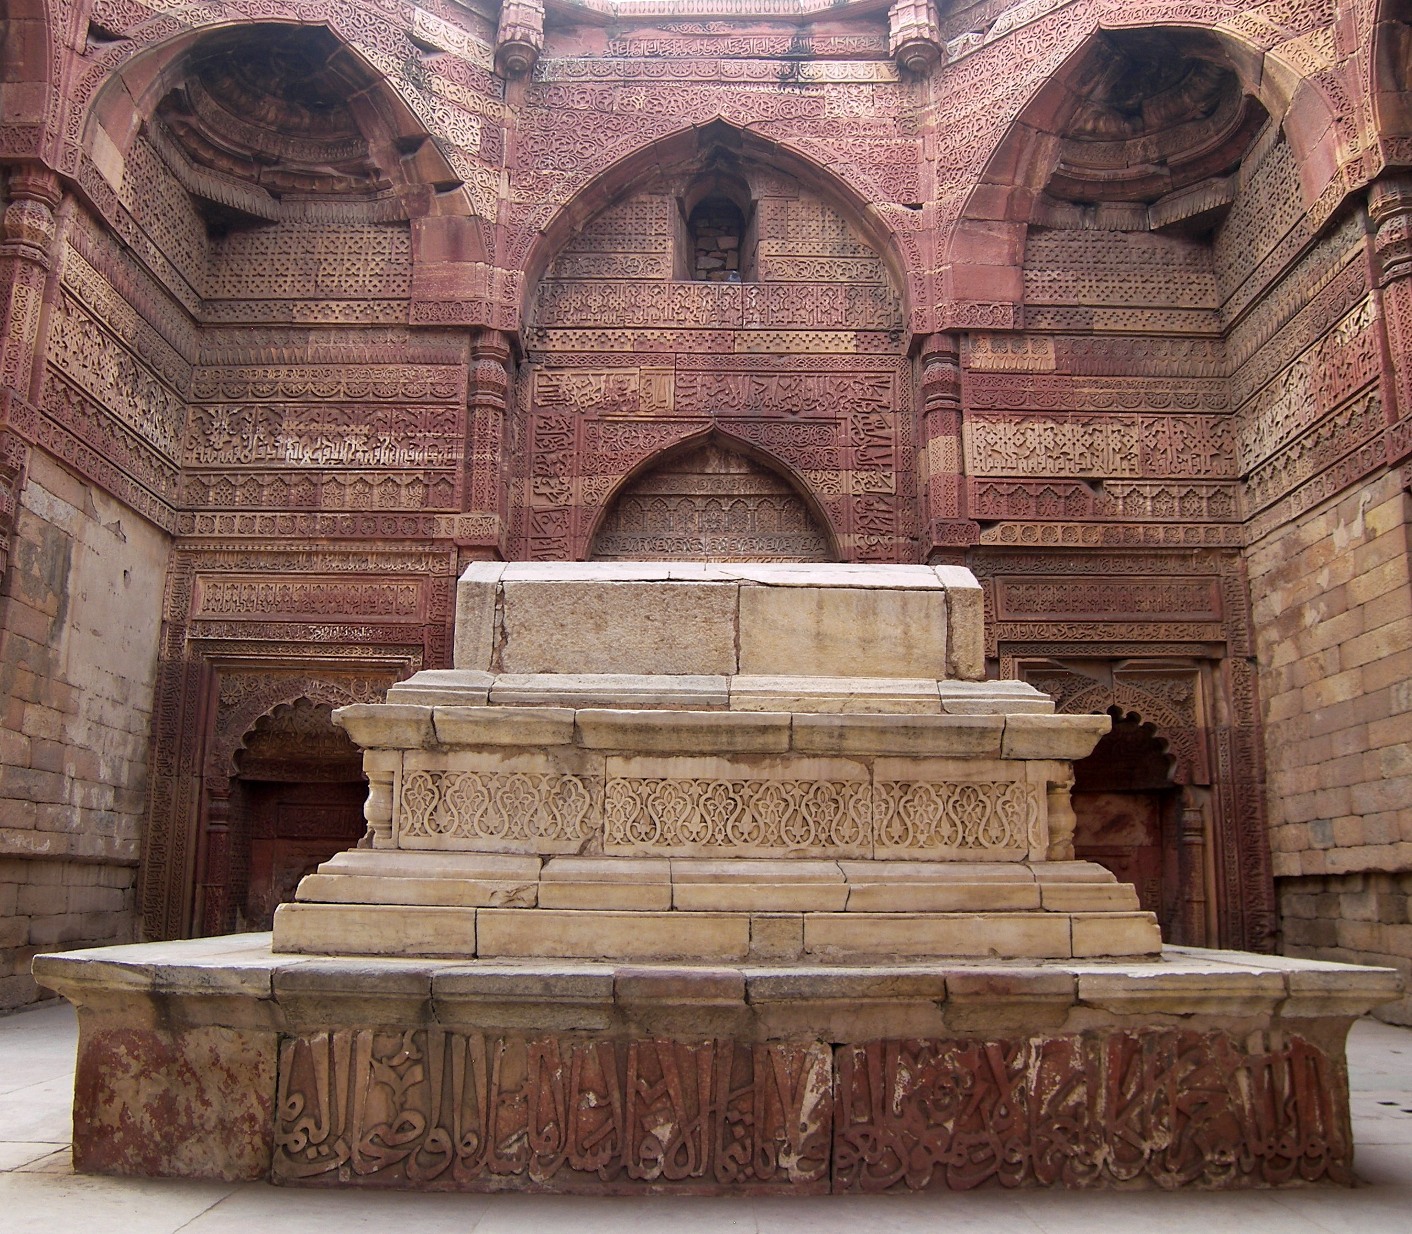 Iltutmish-Tomb-Qutab-Minar.jpg